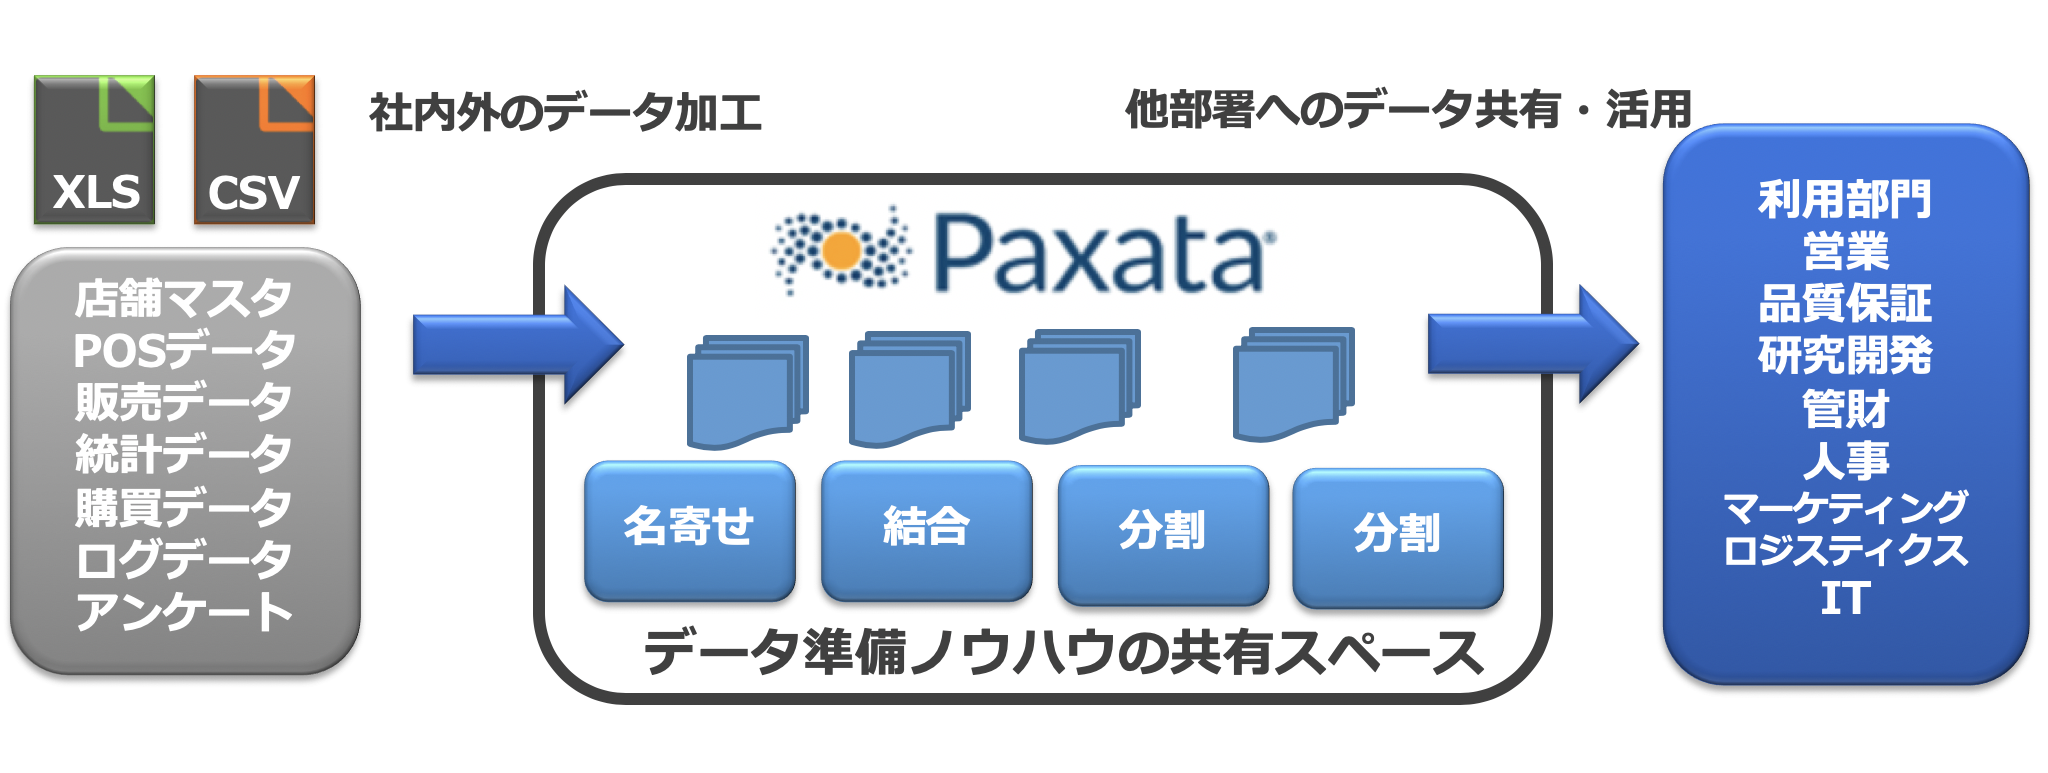 Paxata3.png